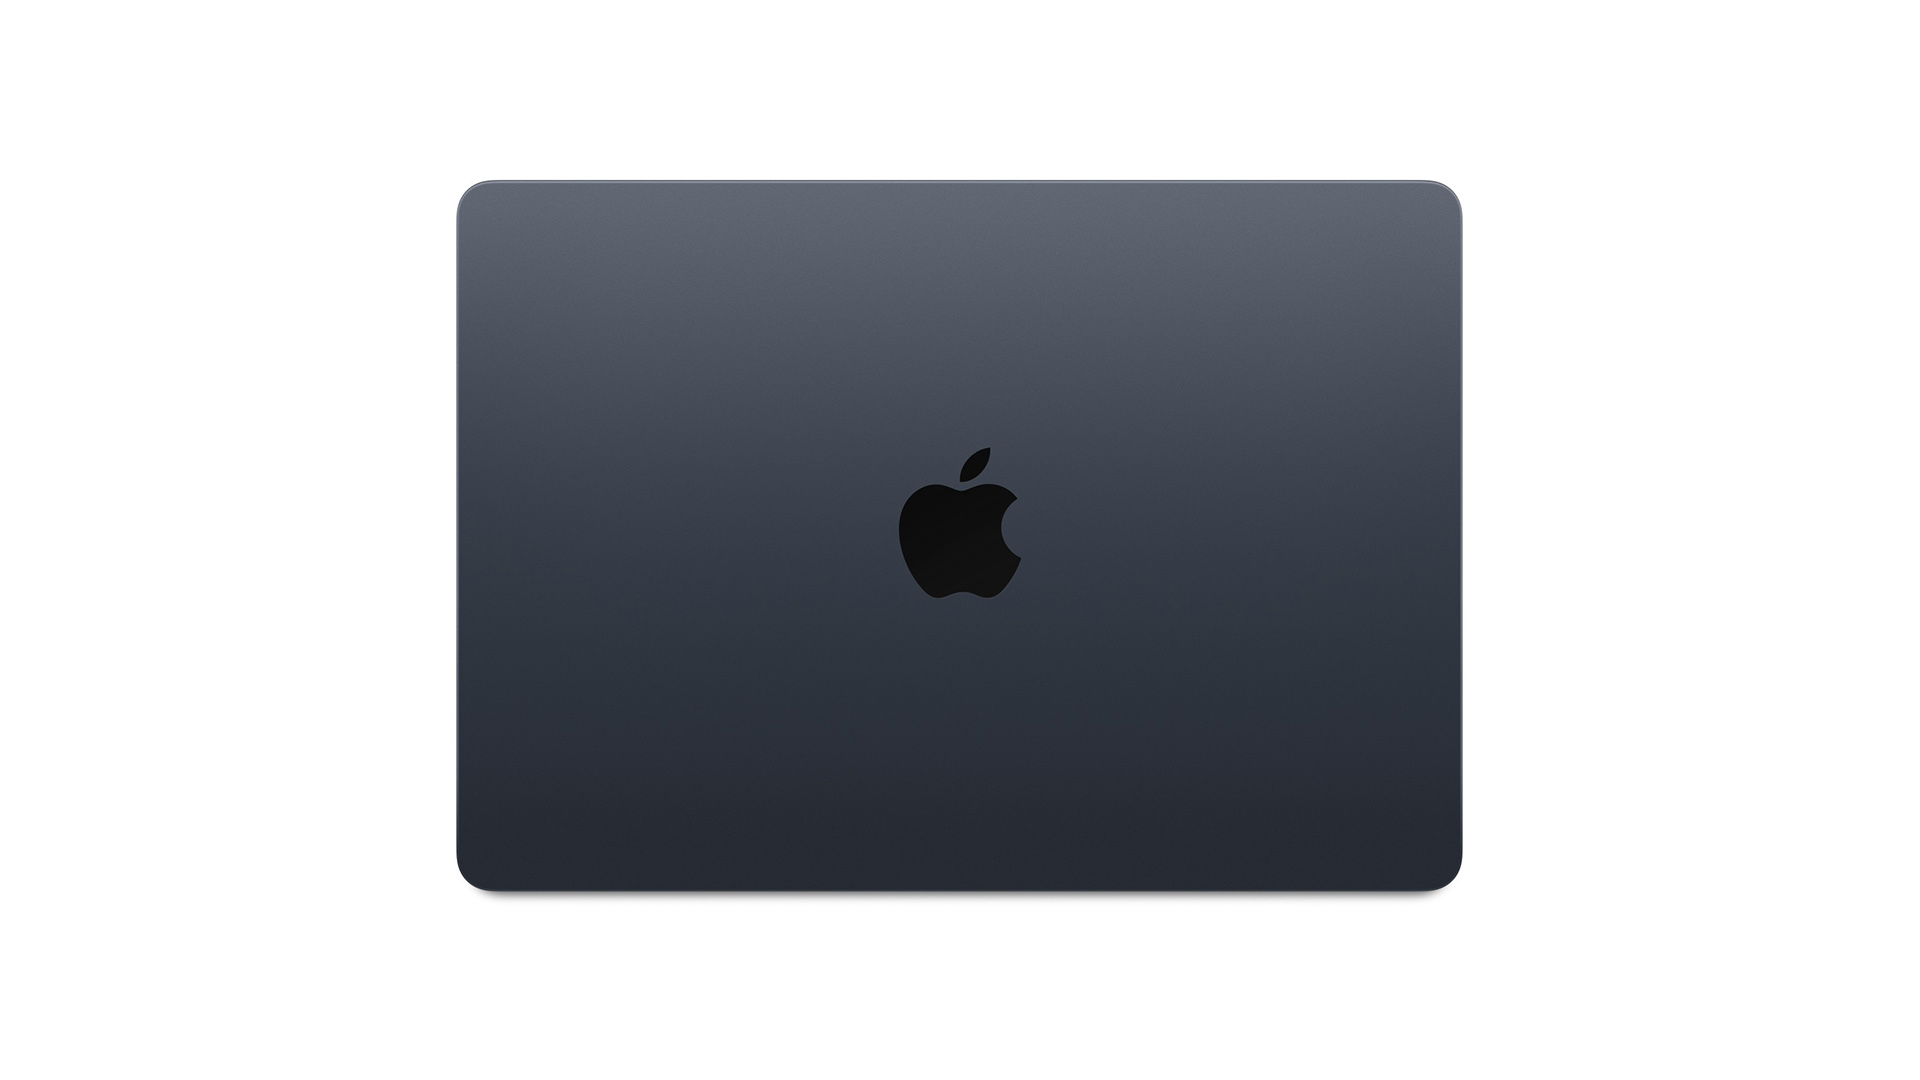 Результаты M3 MacBook Air в Geekbench не показывают различий по сравнению с MacBook Pro